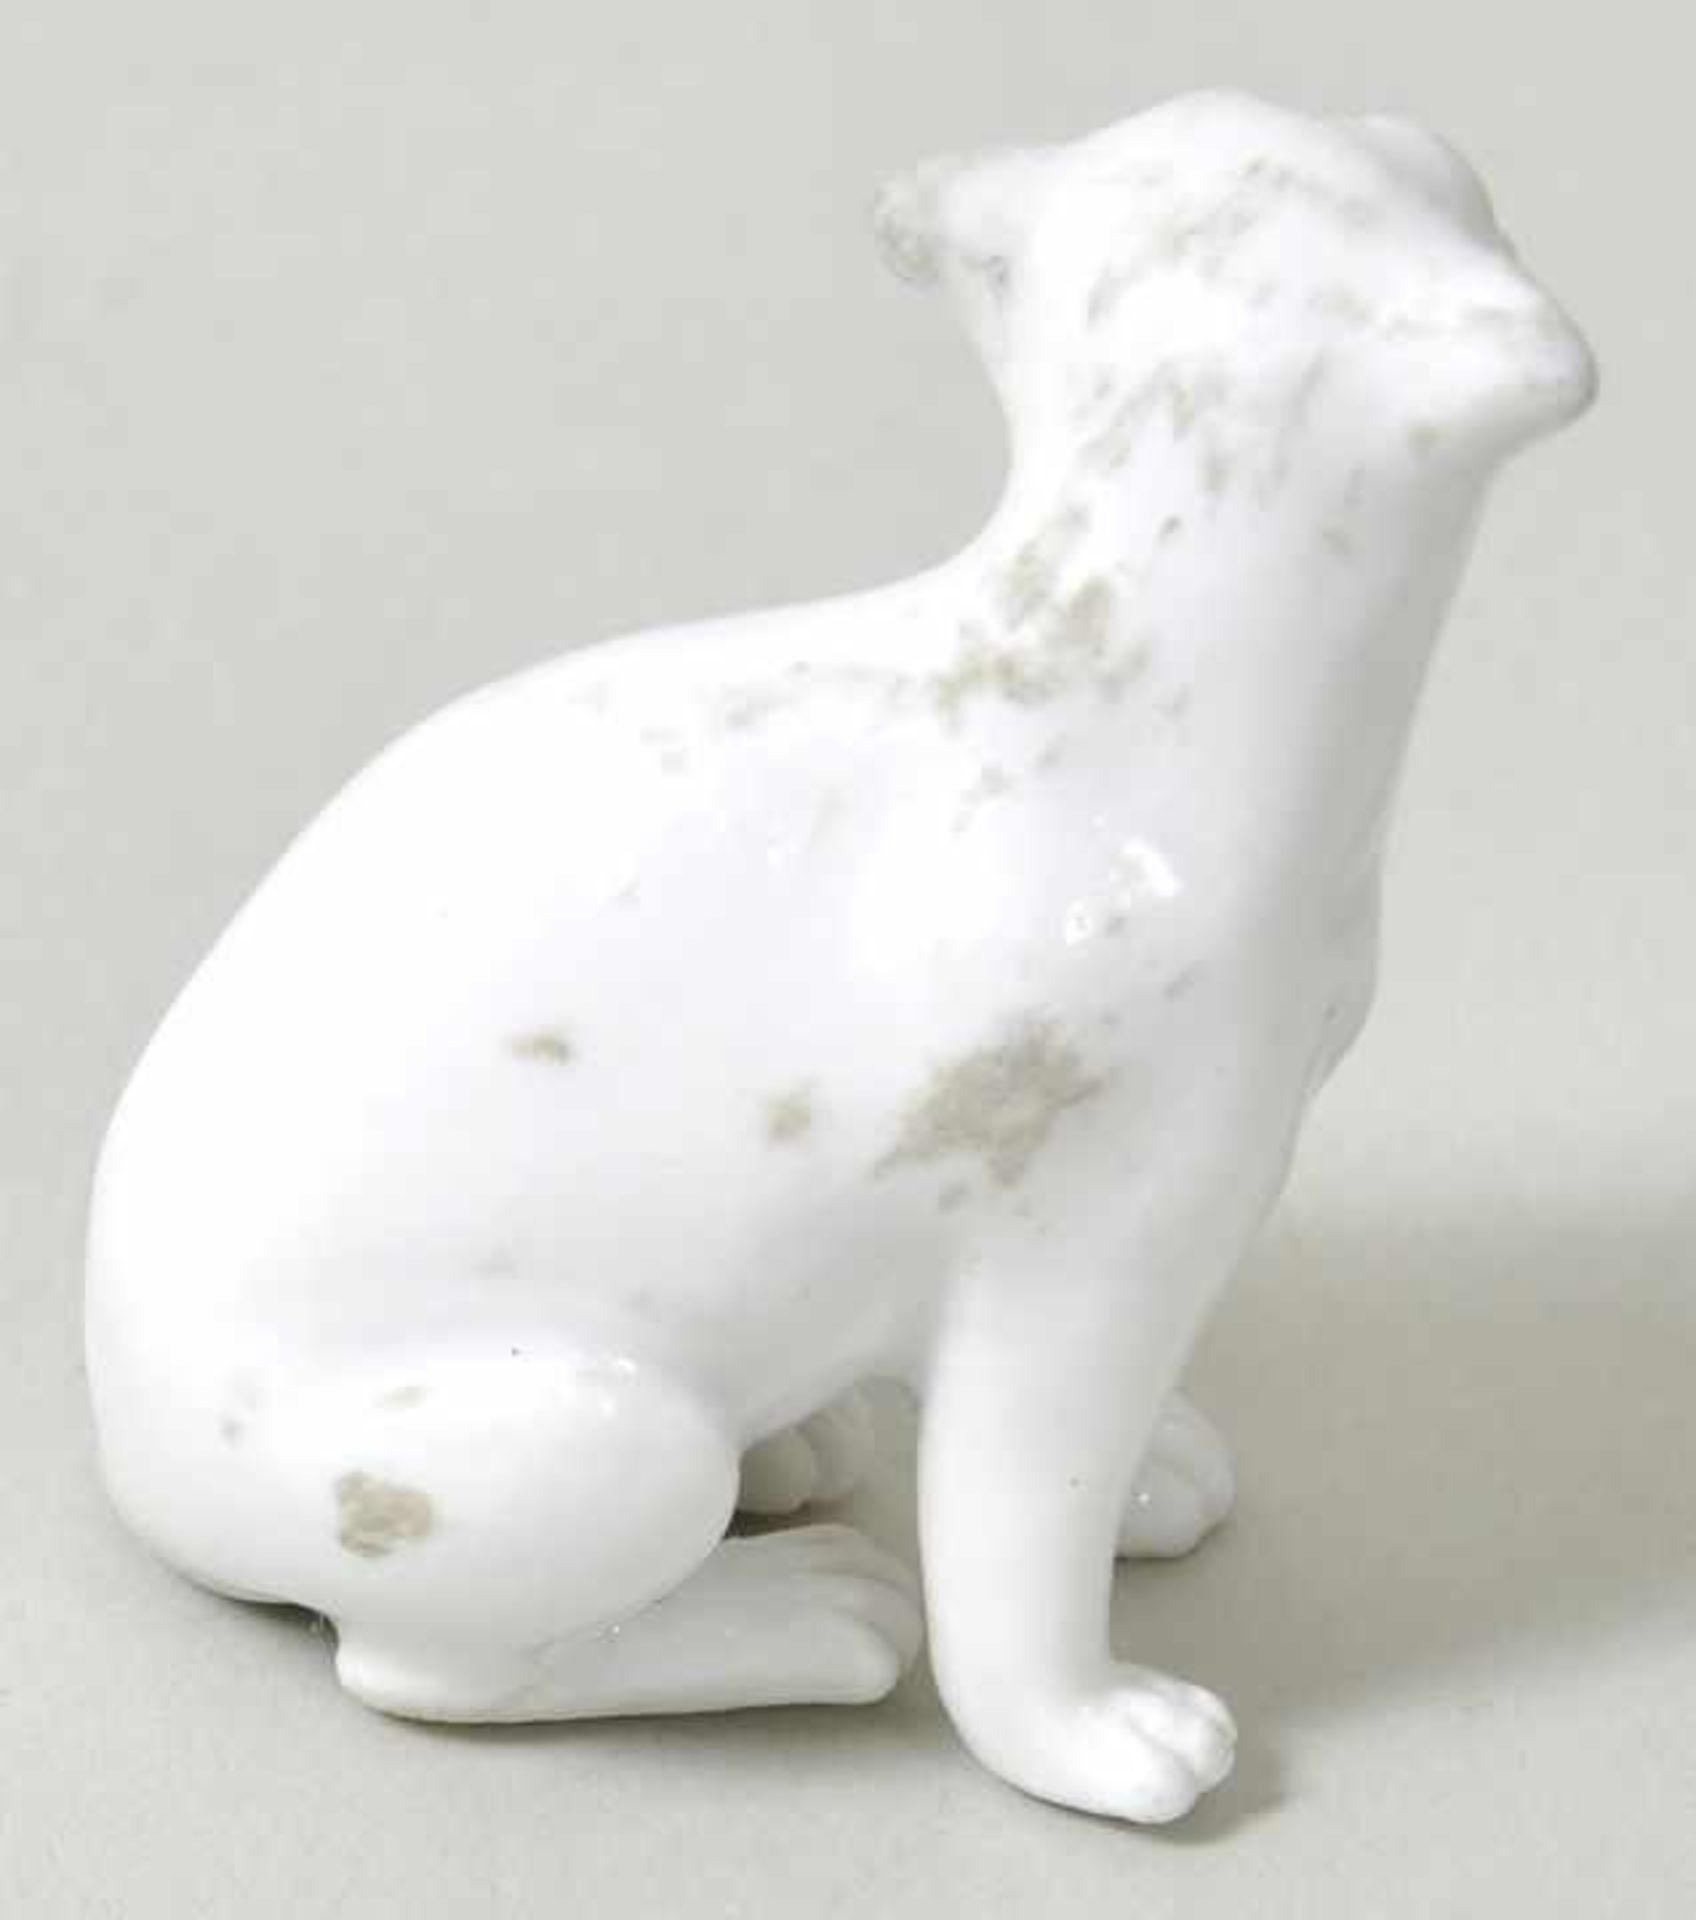 Tierminiatur kleine Katze, Meissen, 18. Jh. Porzellan, weiß. Unbekannter Modelleur. - Bild 2 aus 3